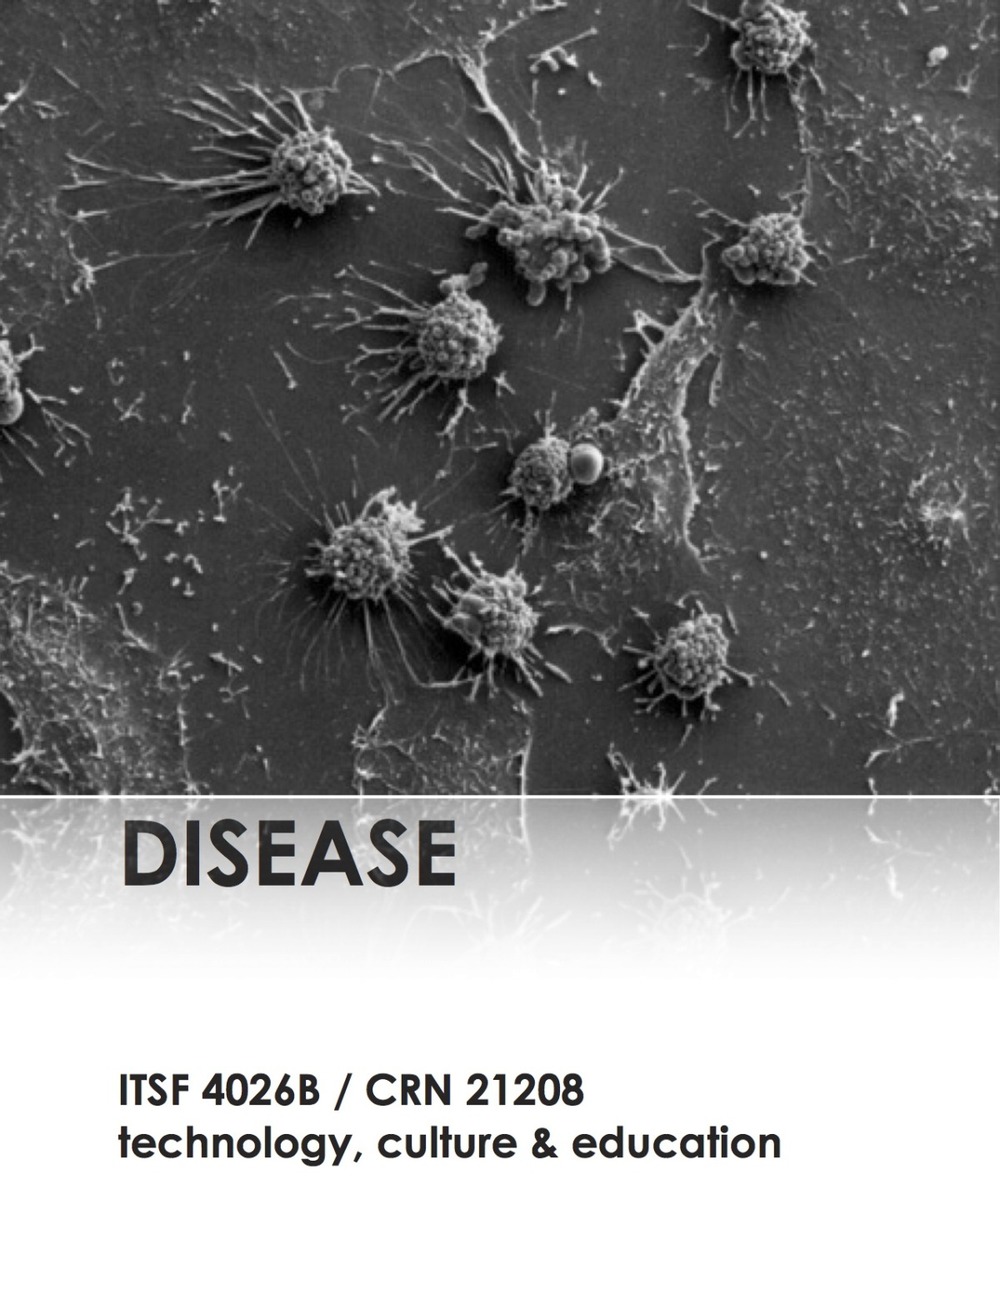 itsf 4026b flyers - disease.jpg